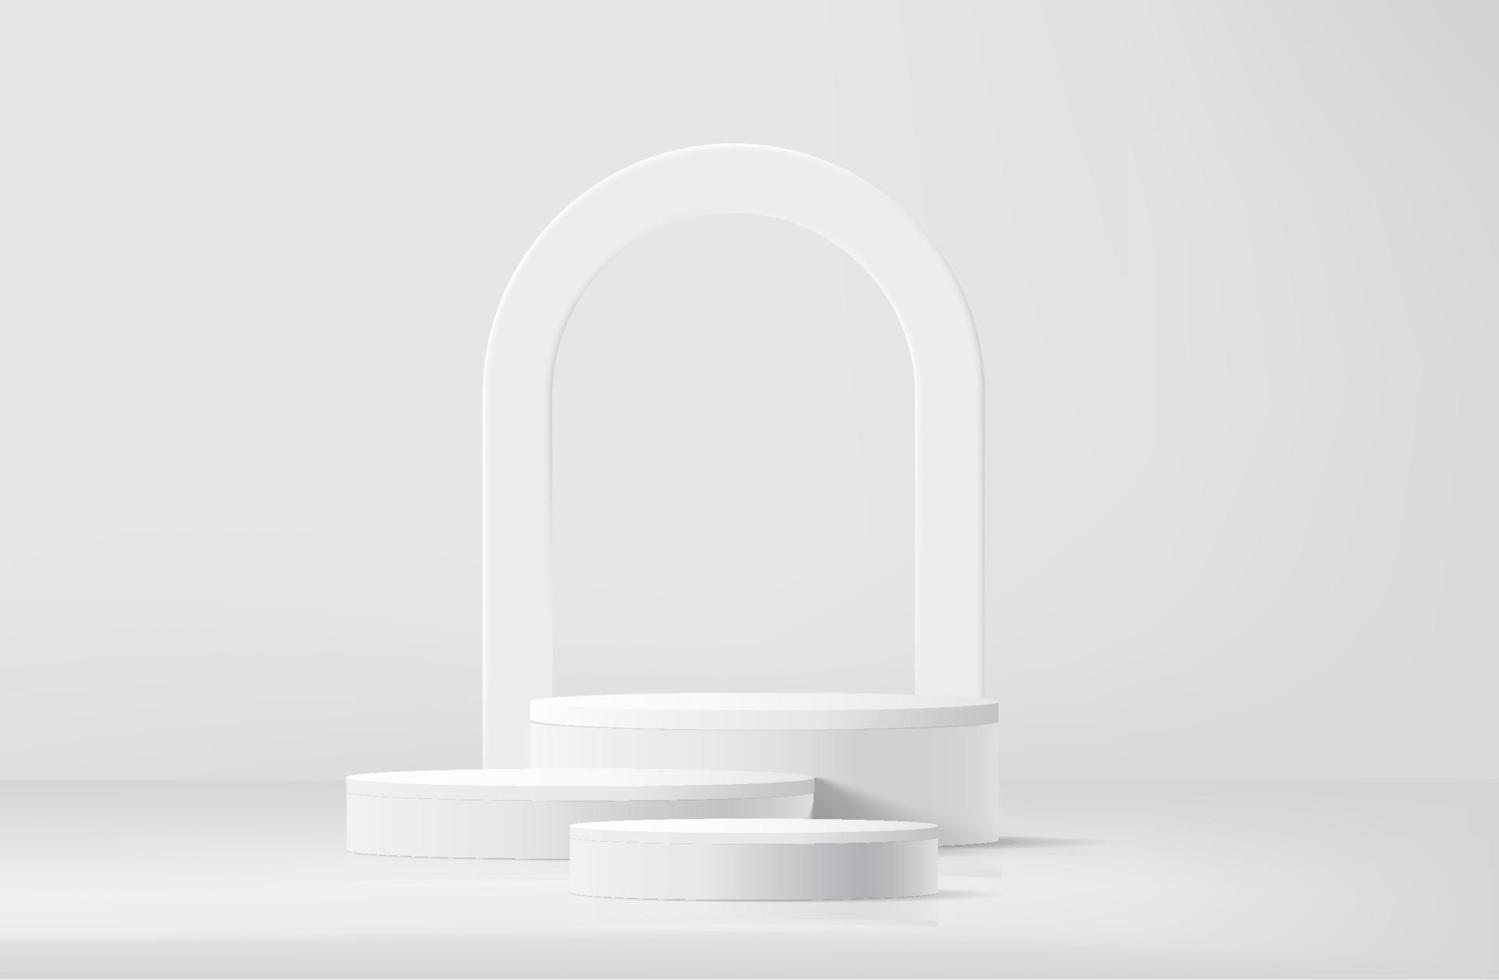 podio de pedestal de cilindro 3d realista blanco abstracto con fondo de forma de arco. plataforma geométrica de representación vectorial abstracta con superposición de sombras. presentación de exhibición de productos. escena mínima. vector